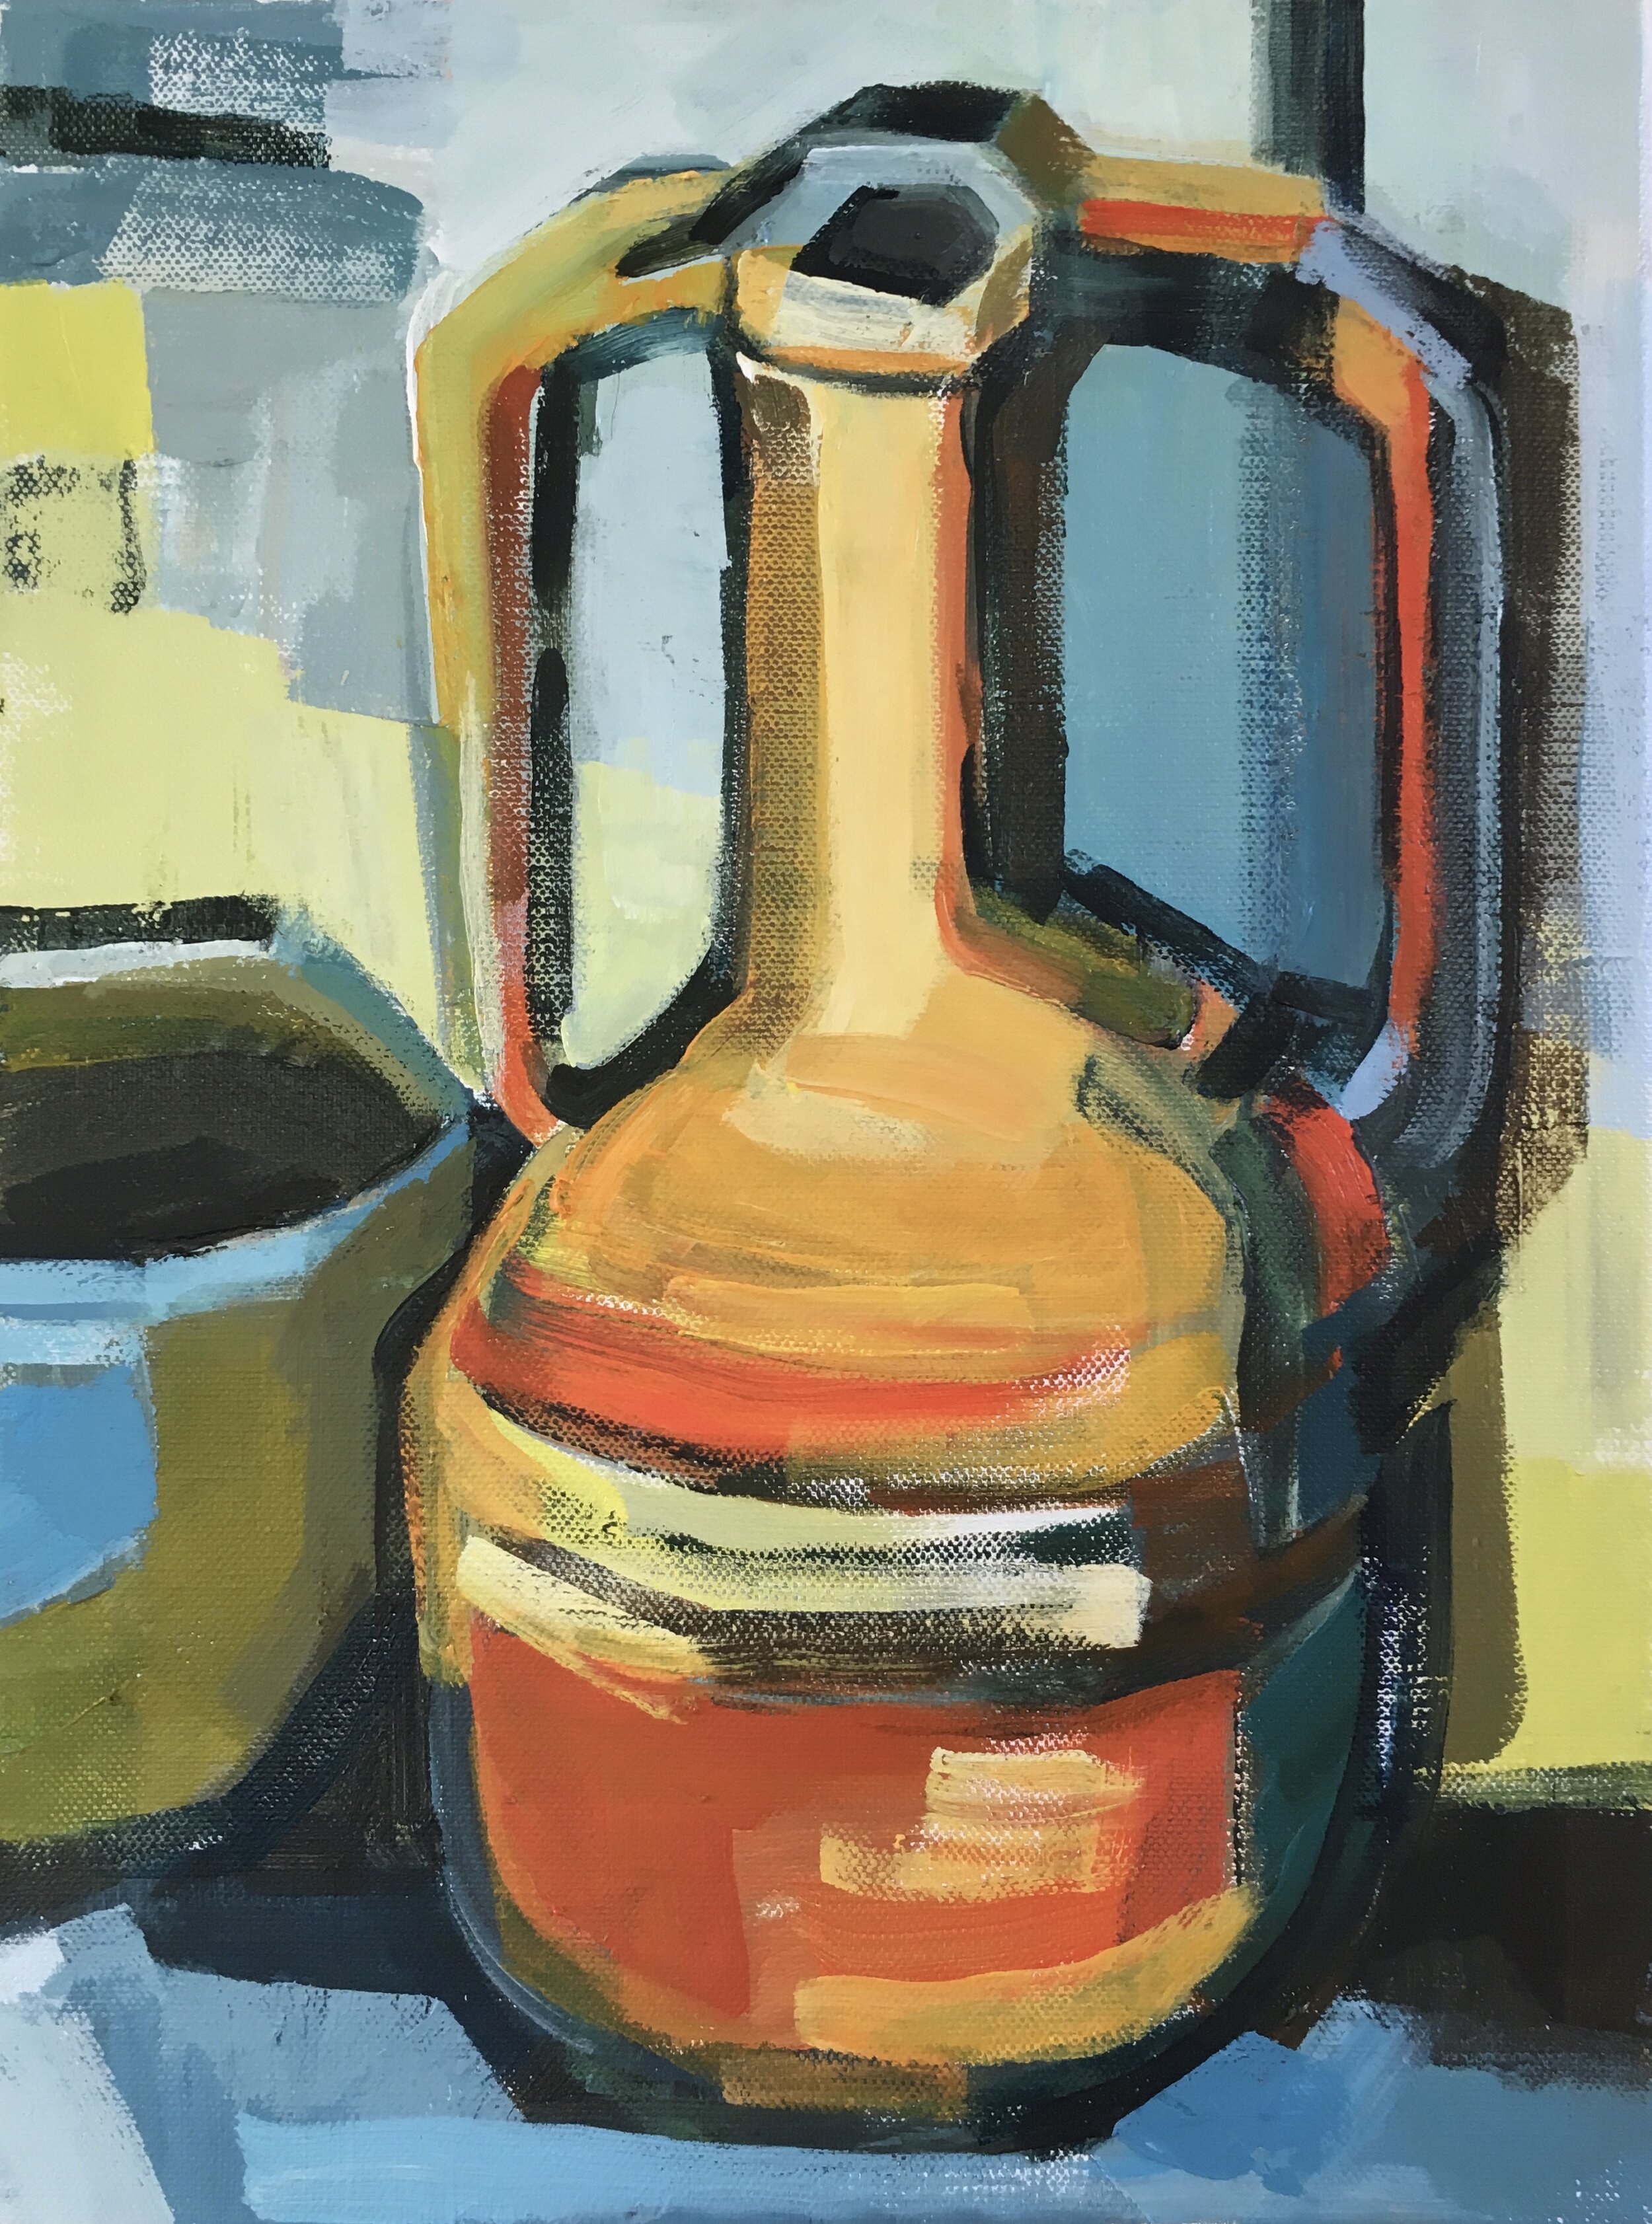  TITLE: Orange Vase with olive and blue bowl MEDIUM: Acrylic on canvas SIZE: 35 x 45cm 